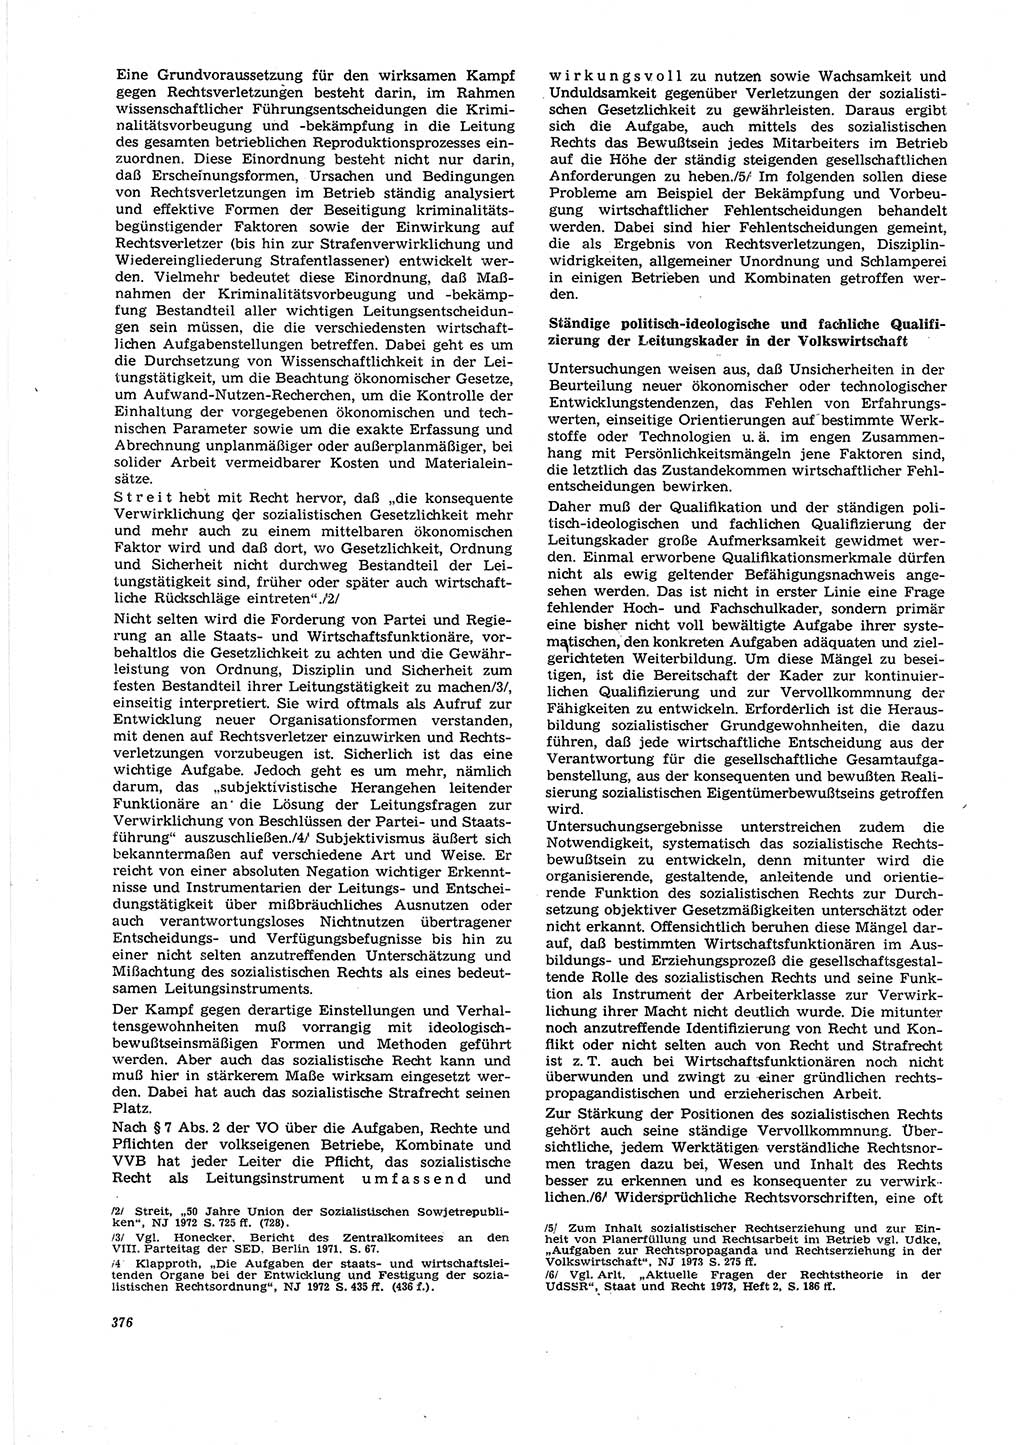 Neue Justiz (NJ), Zeitschrift für Recht und Rechtswissenschaft [Deutsche Demokratische Republik (DDR)], 27. Jahrgang 1973, Seite 376 (NJ DDR 1973, S. 376)